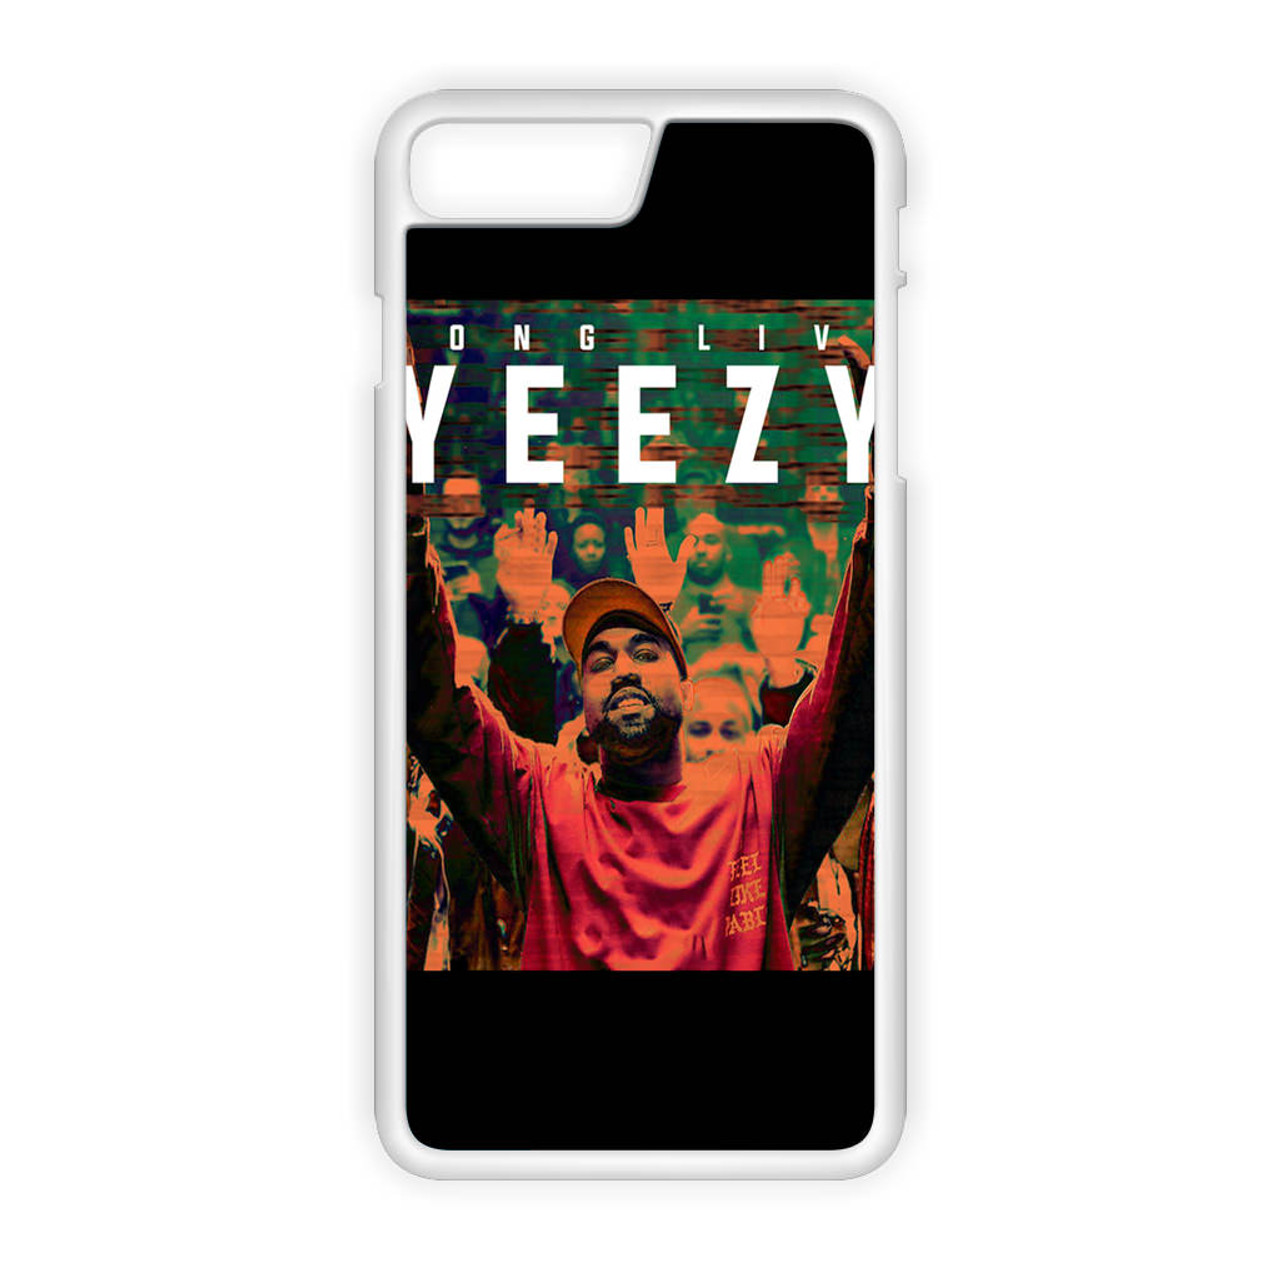 Kanye West Yeezy iPhone 8 Plus Case 